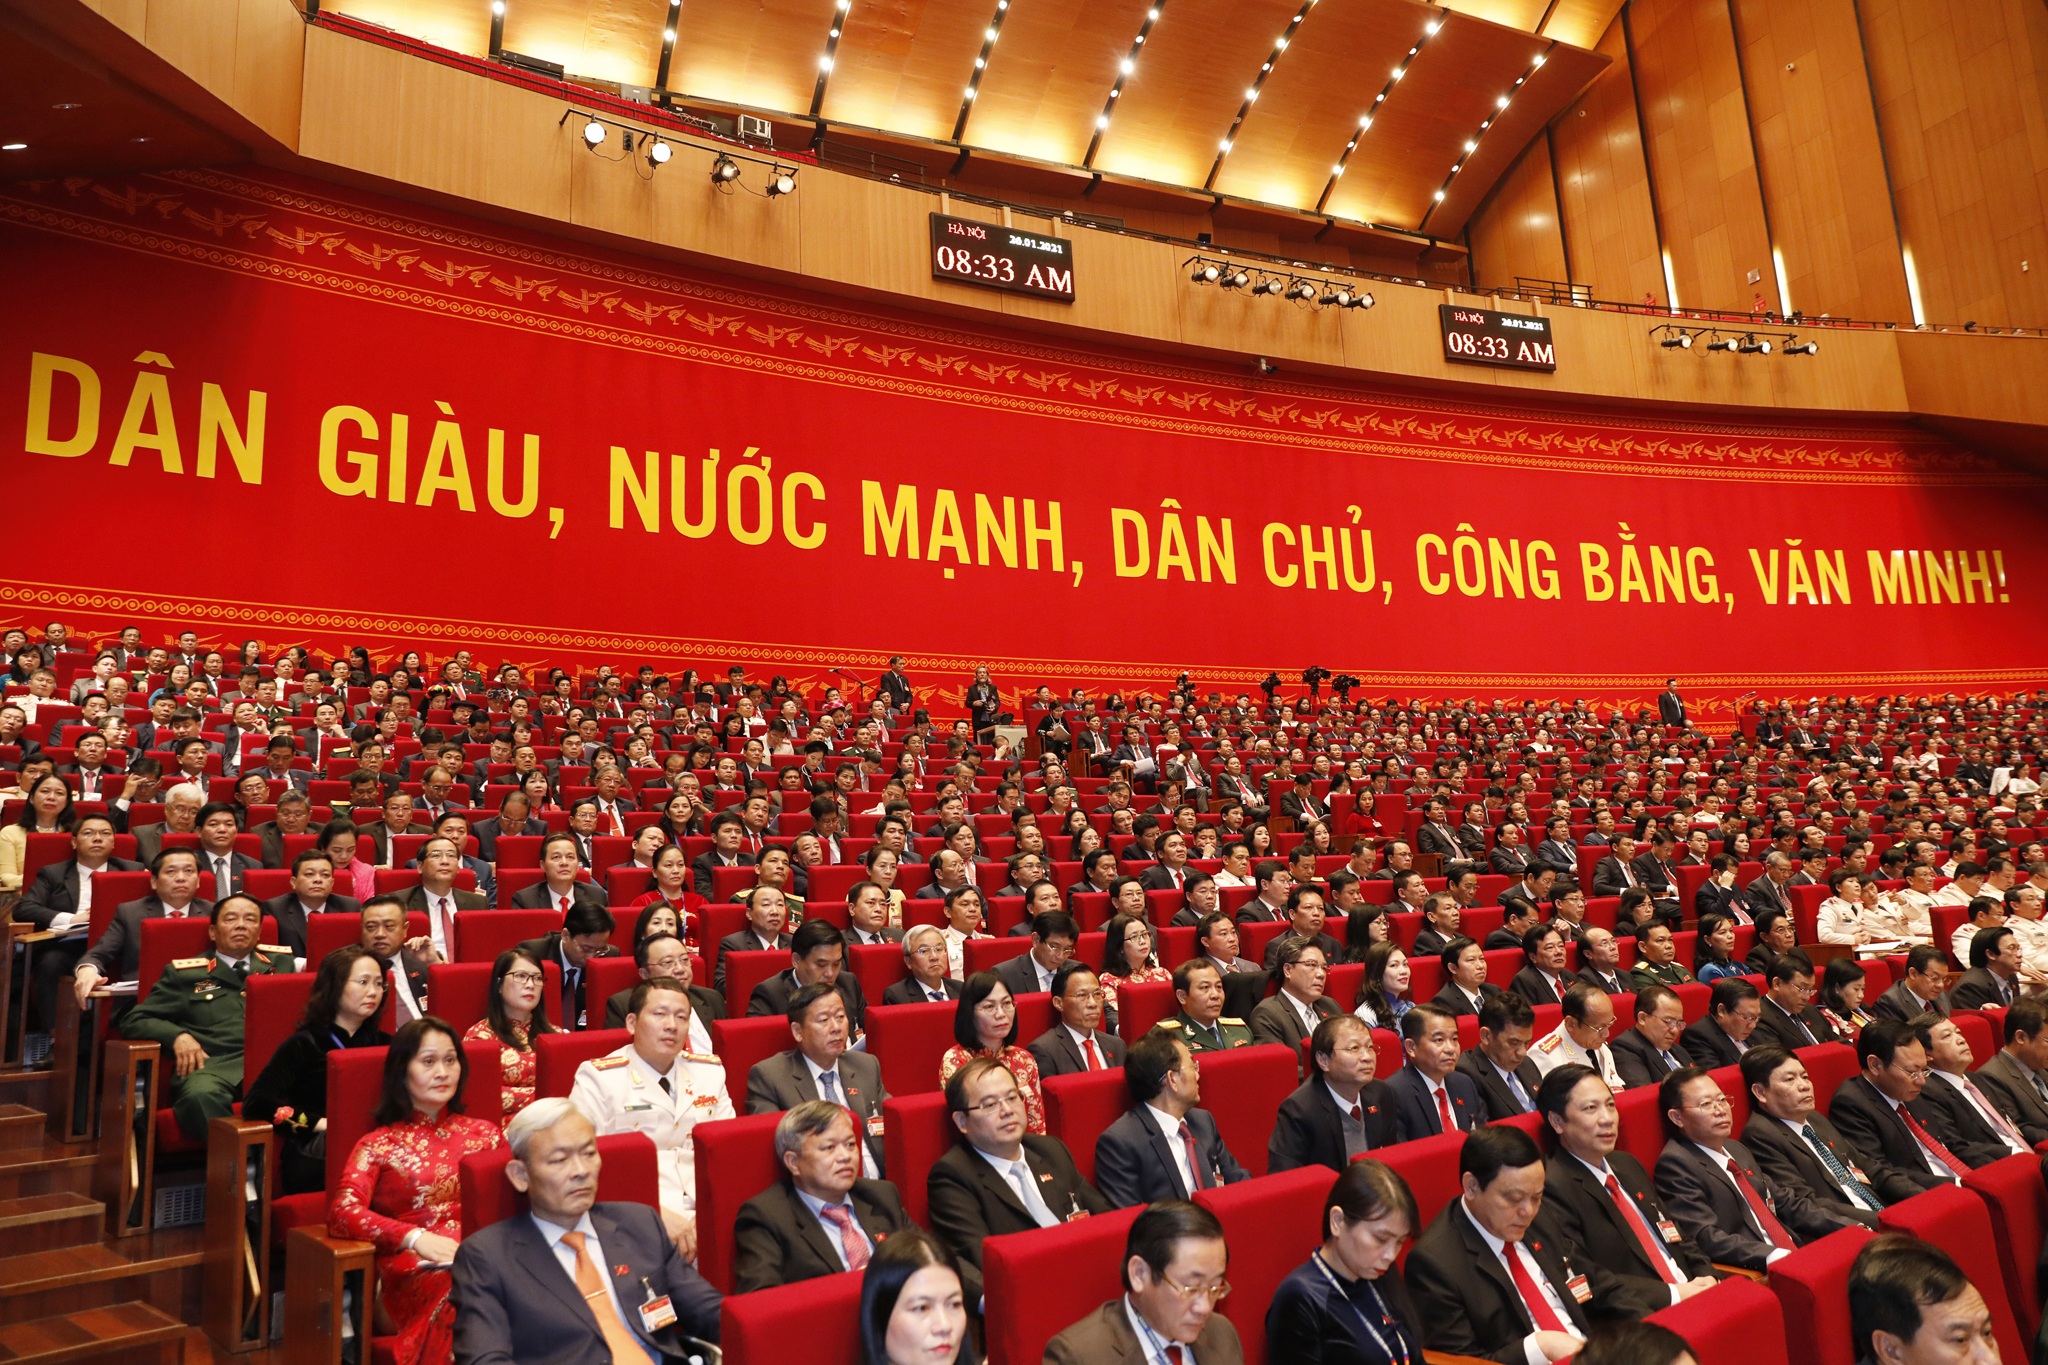 Toàn cảnh phiên khai mạc Đại hội Đại biểu toàn quốc lần thứ XIII của Đảng